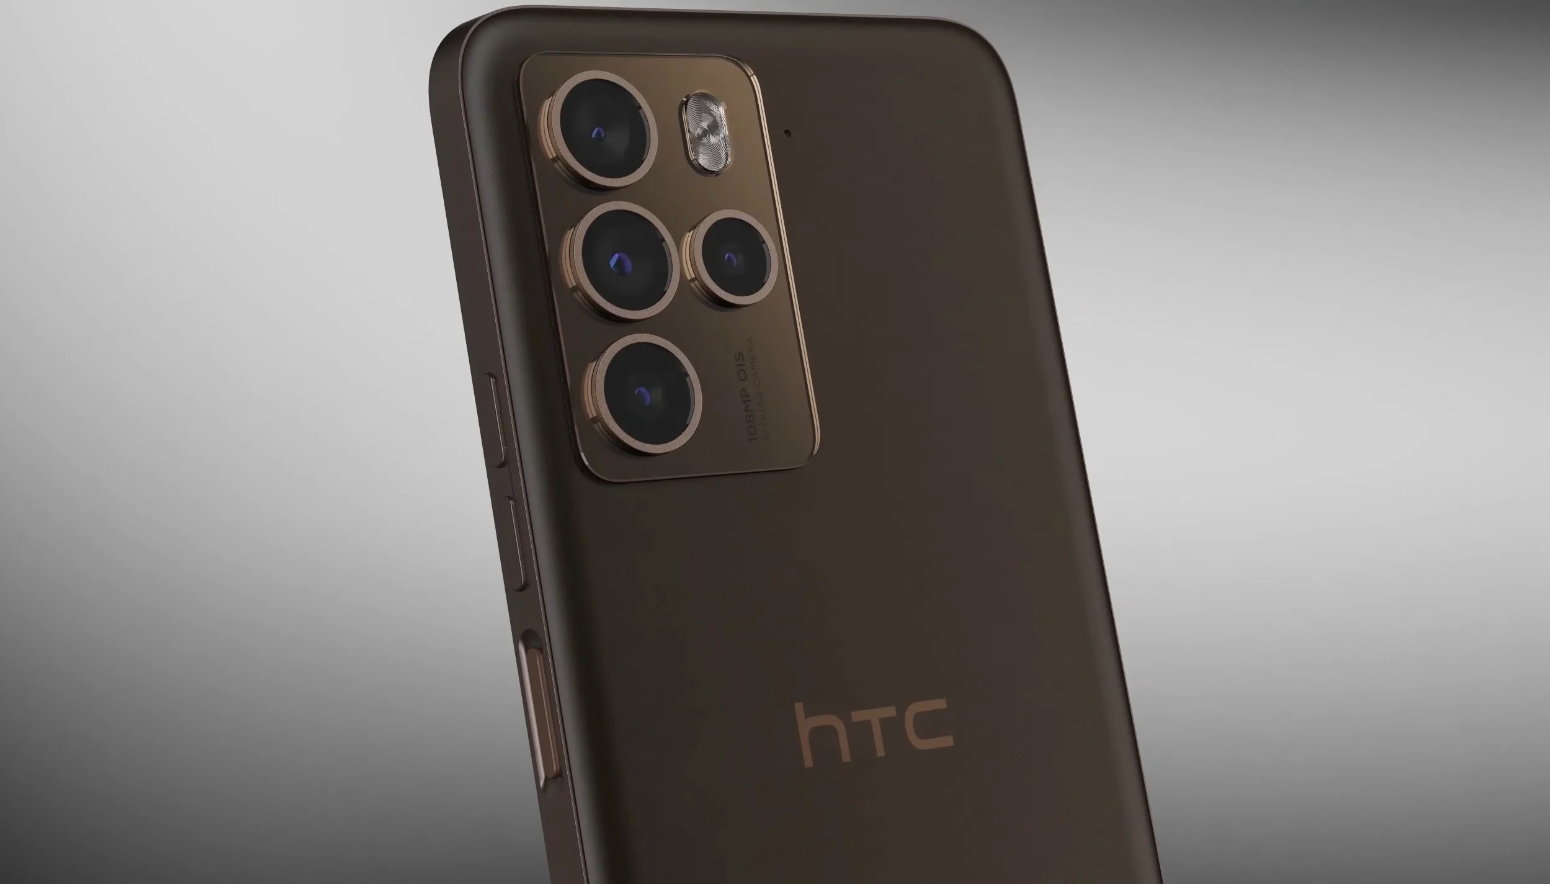 Le dernier HTC : un smartphone à la pointe de la technologie